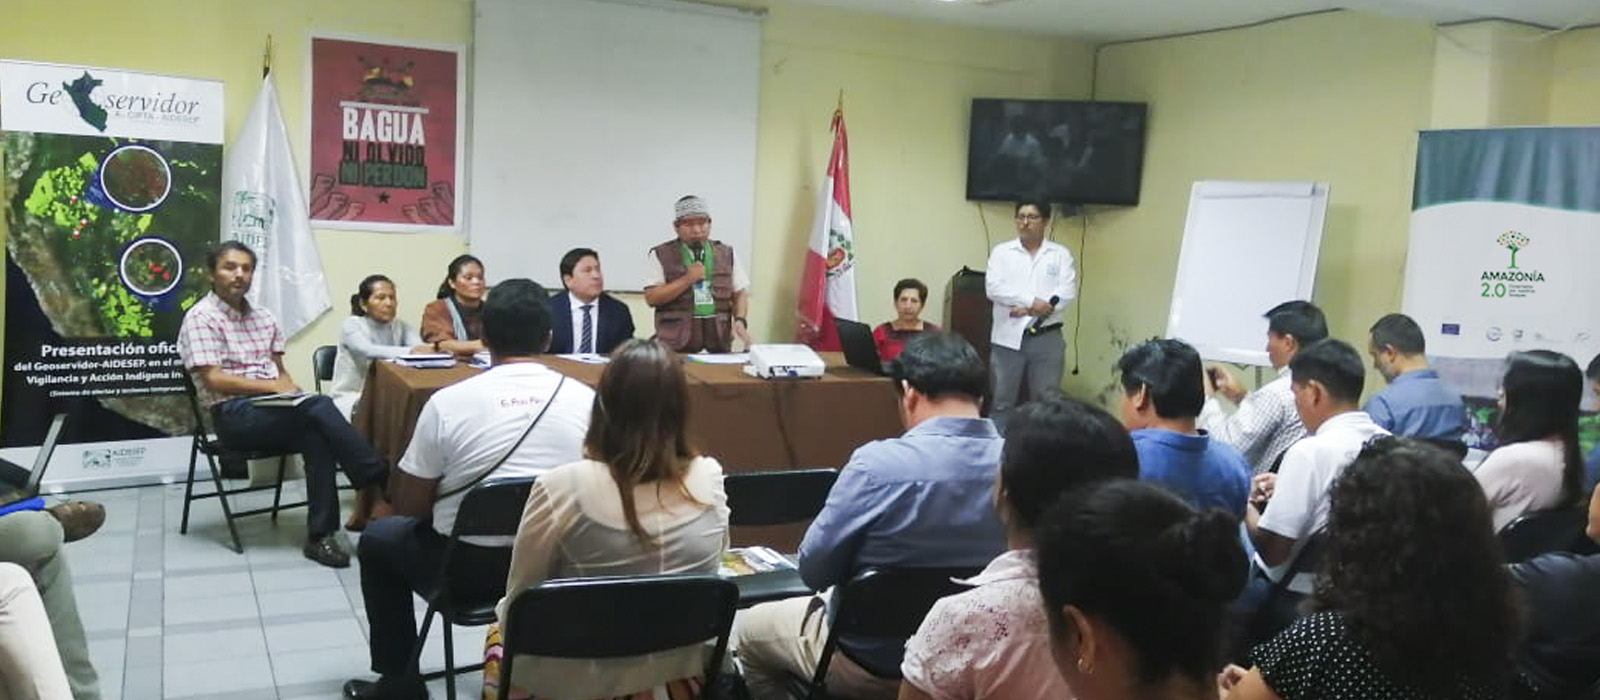 AIDESEP lanza GEOSERVIDOR para monitoreo, vigilancia y alertas tempranas en AmazonÃ­a Peruana